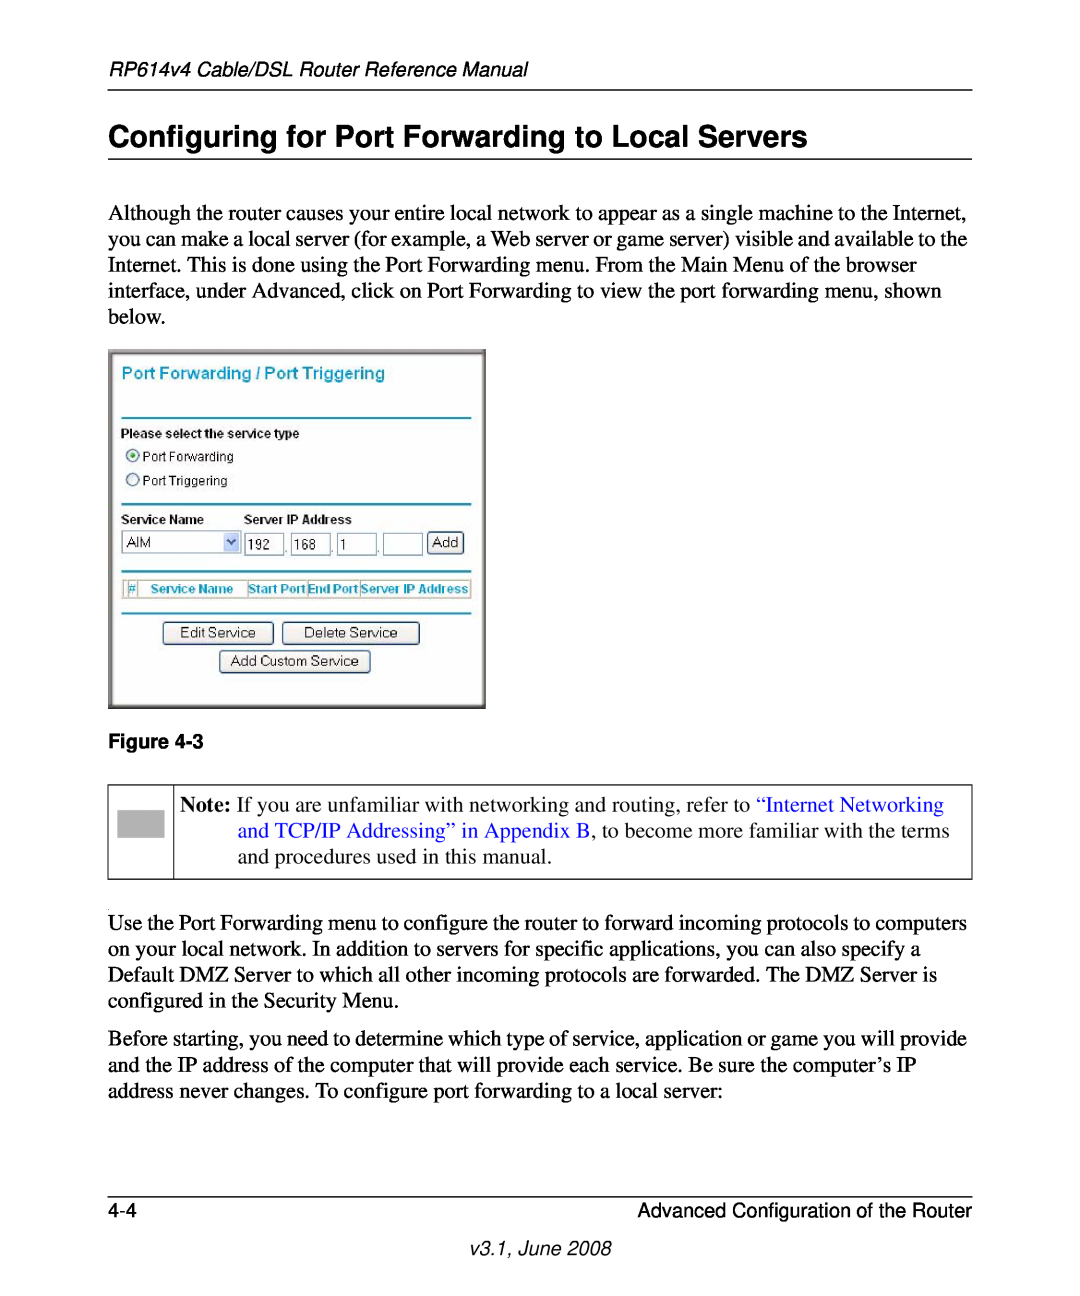 NETGEAR RP614 v4 manual Configuring for Port Forwarding to Local Servers 